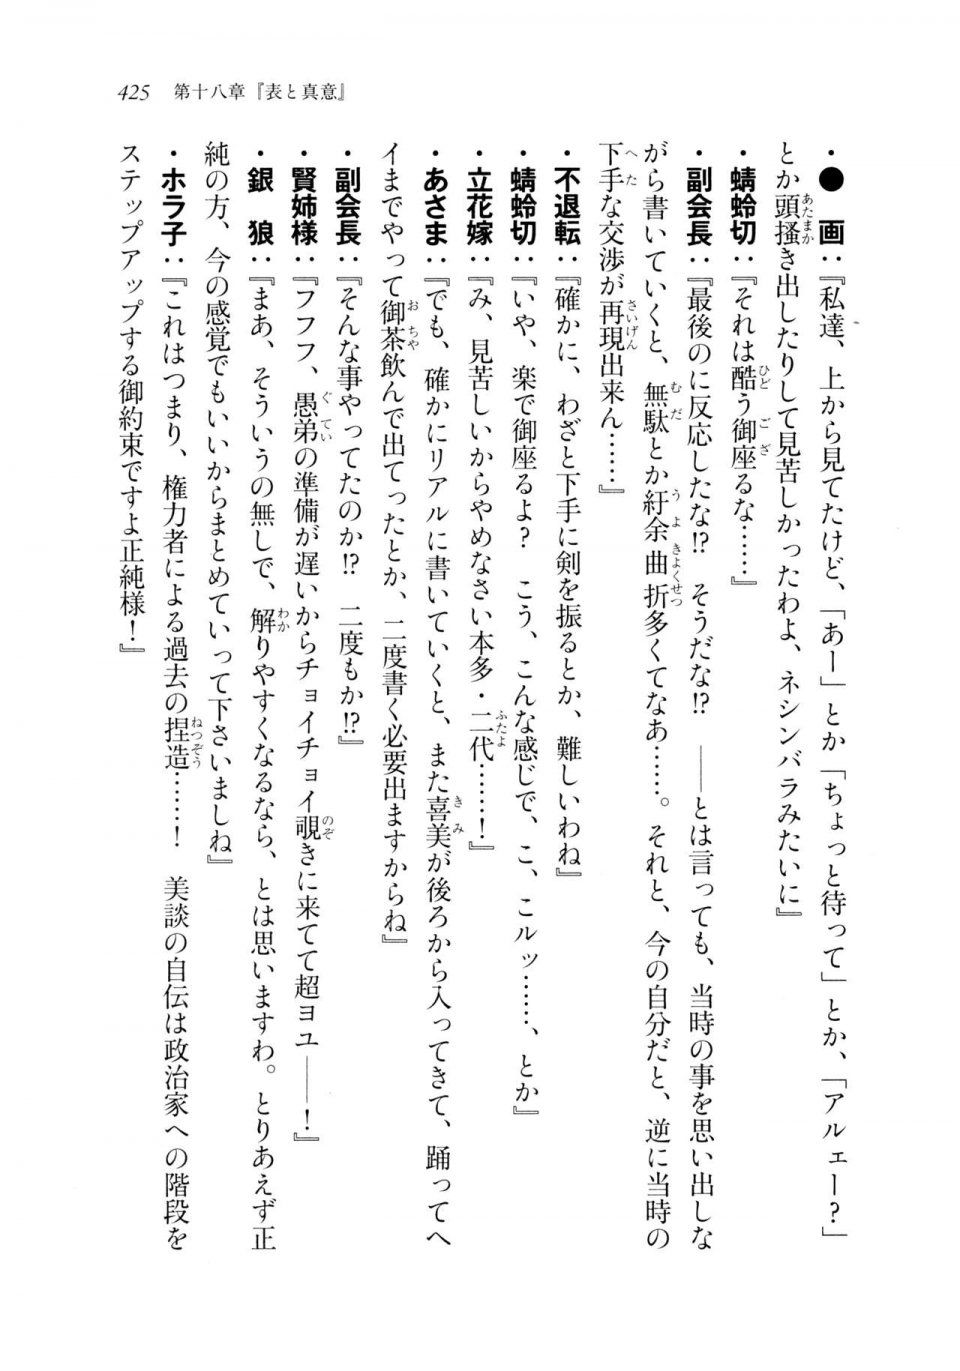 Kyoukai Senjou no Horizon LN Sidestory Vol 2 - Photo #423